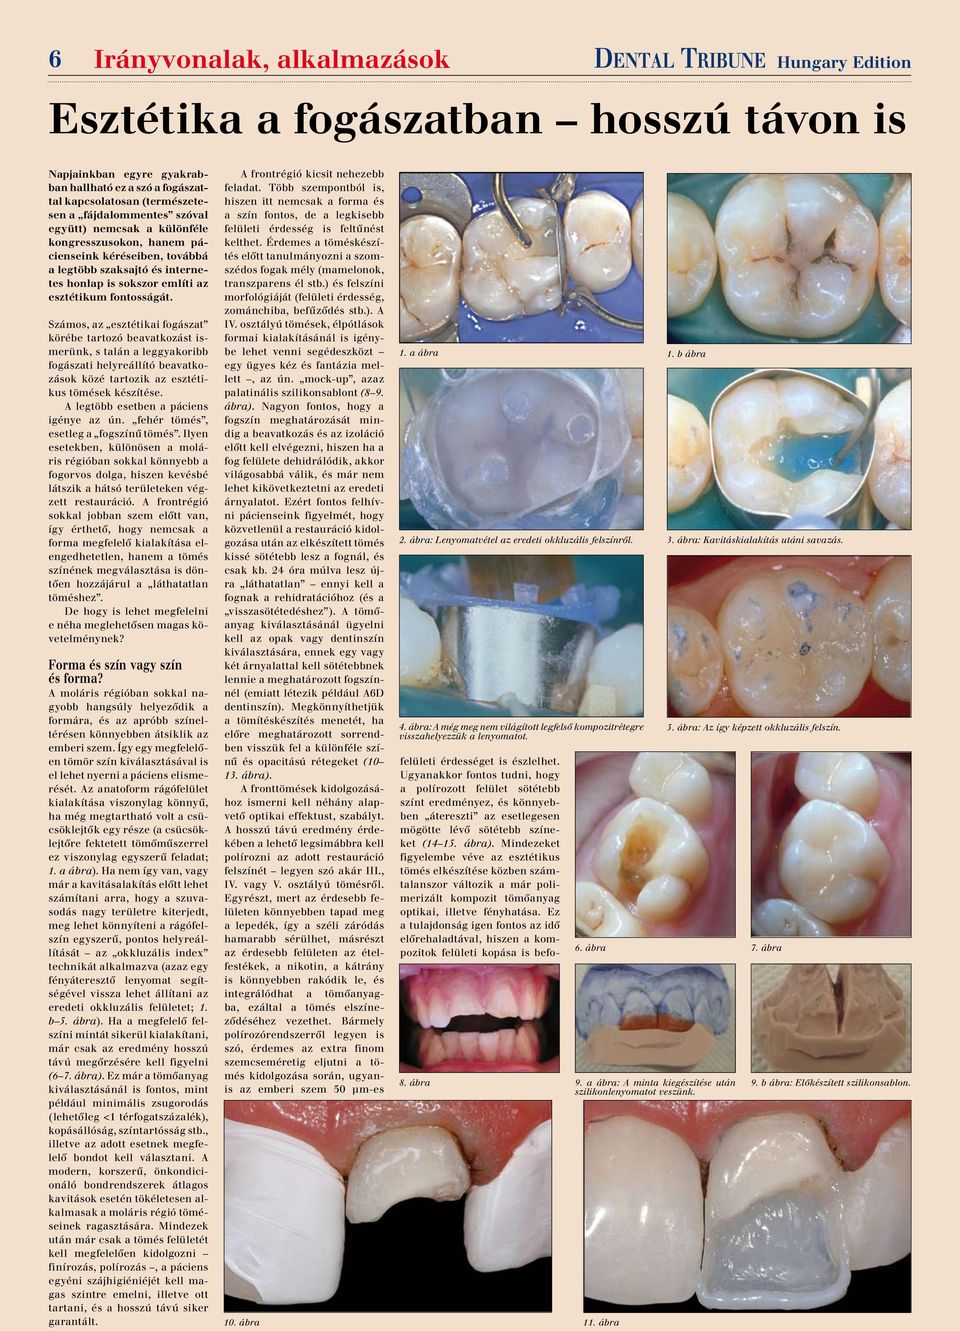 Számos, az esztétikai fogászat körébe tartozó beavatkozást ismerünk, s talán a leggyakoribb fogászati helyreállító beavatkozások közé tartozik az esztétikus tömések készítése.